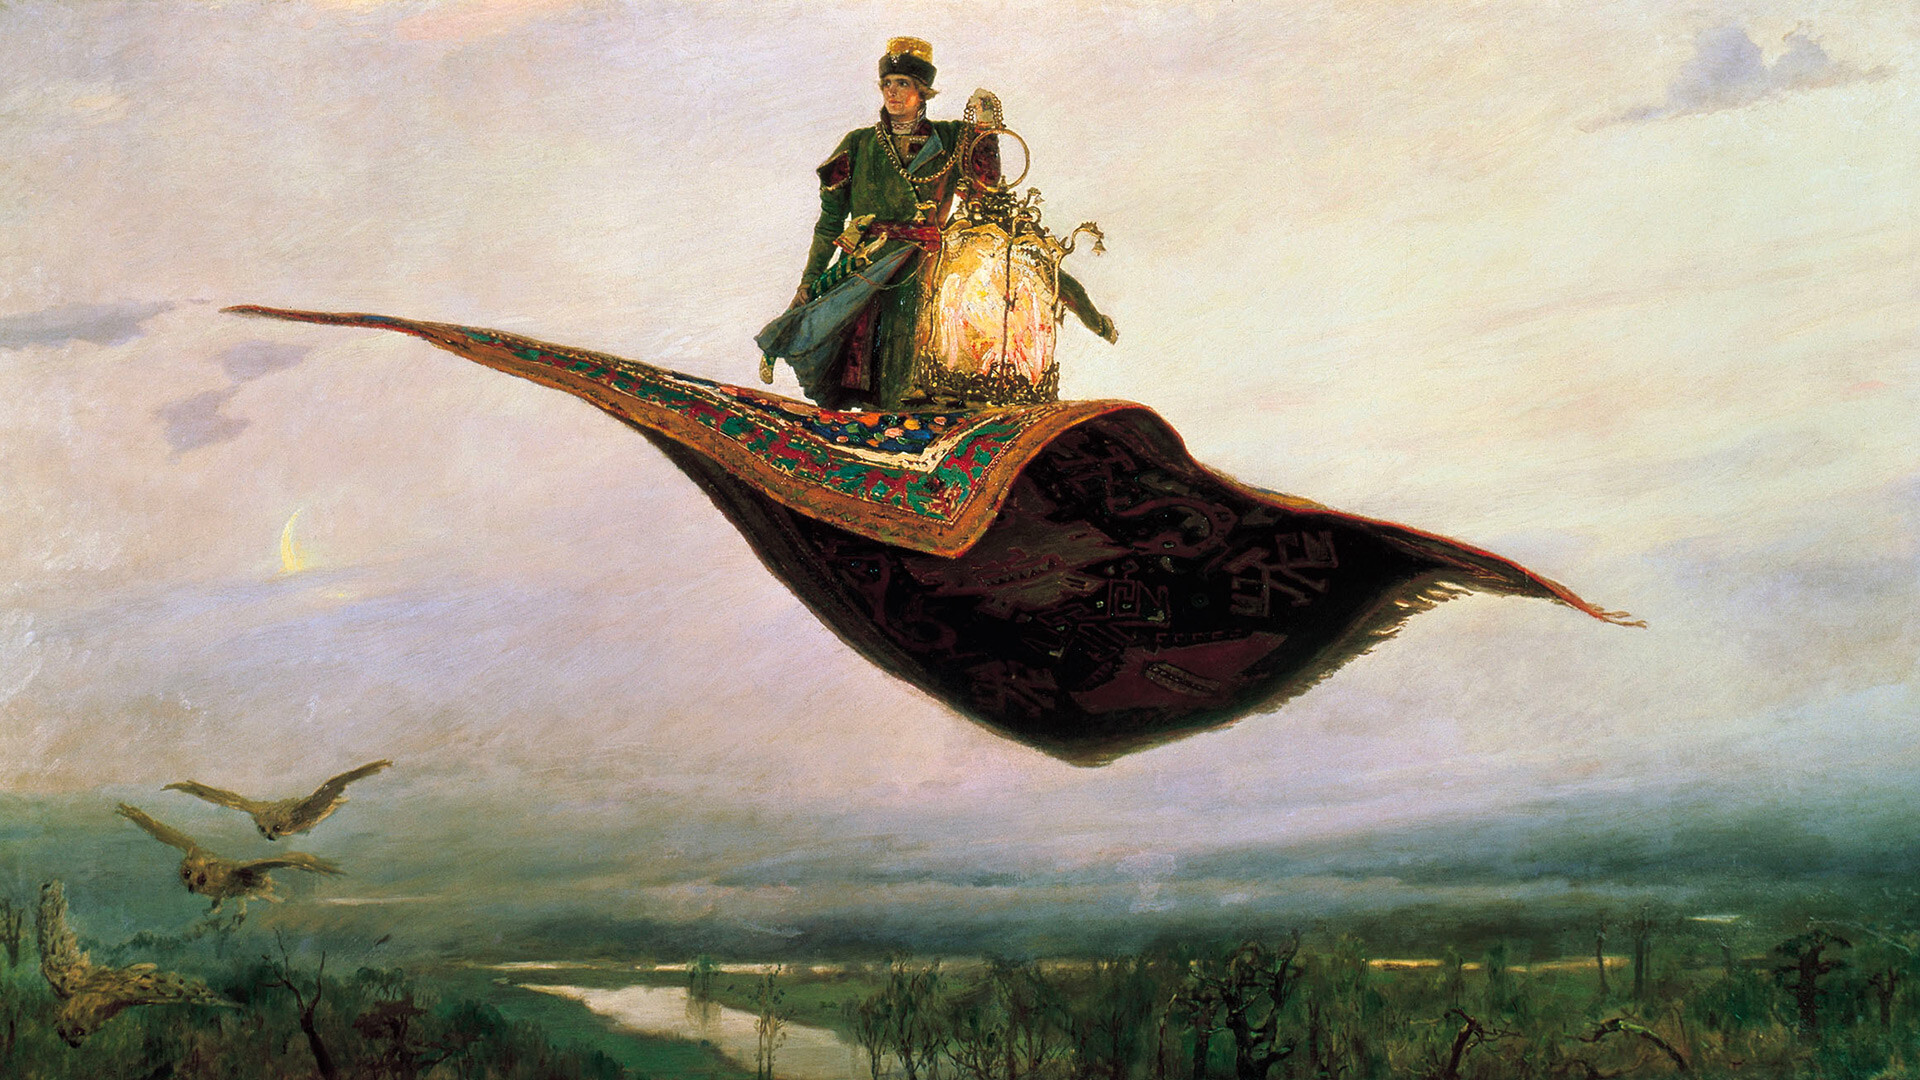 La alfombra voladora, una representación del héroe del folclore ruso, Iván Zarévich